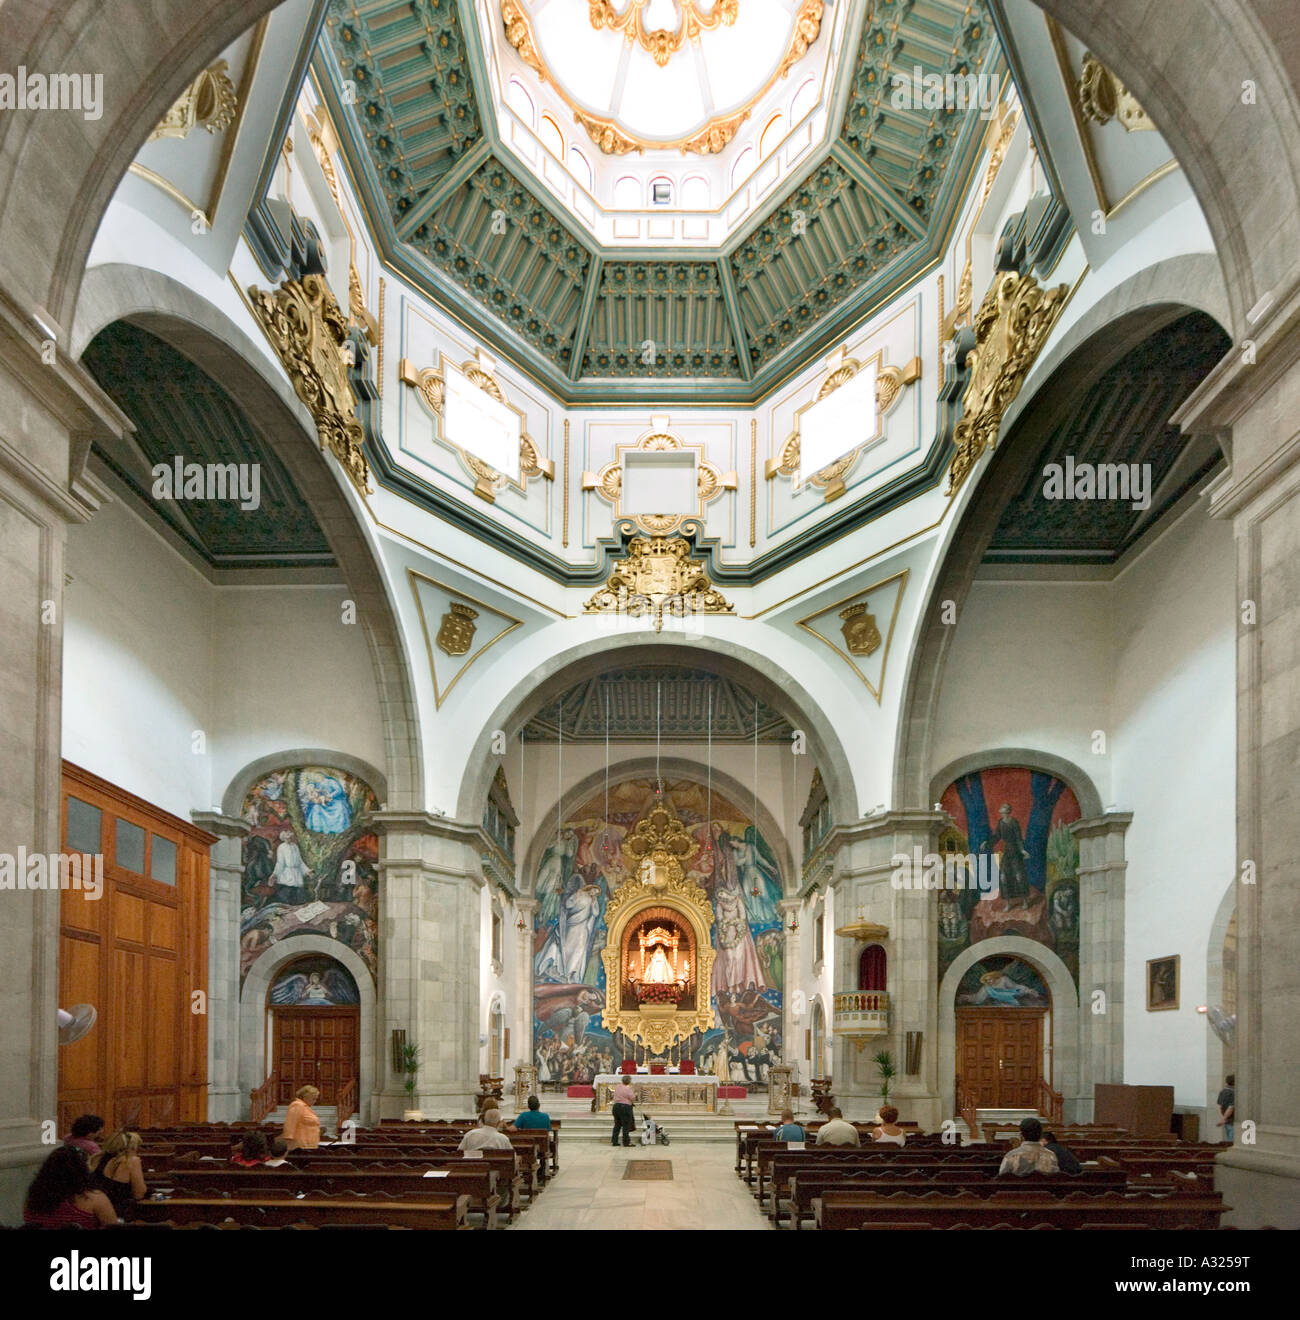 Intérieur de la Basilique de Nuestra Señora de Candelaria, candelaria, Tenerife, Canaries Espagne Banque D'Images